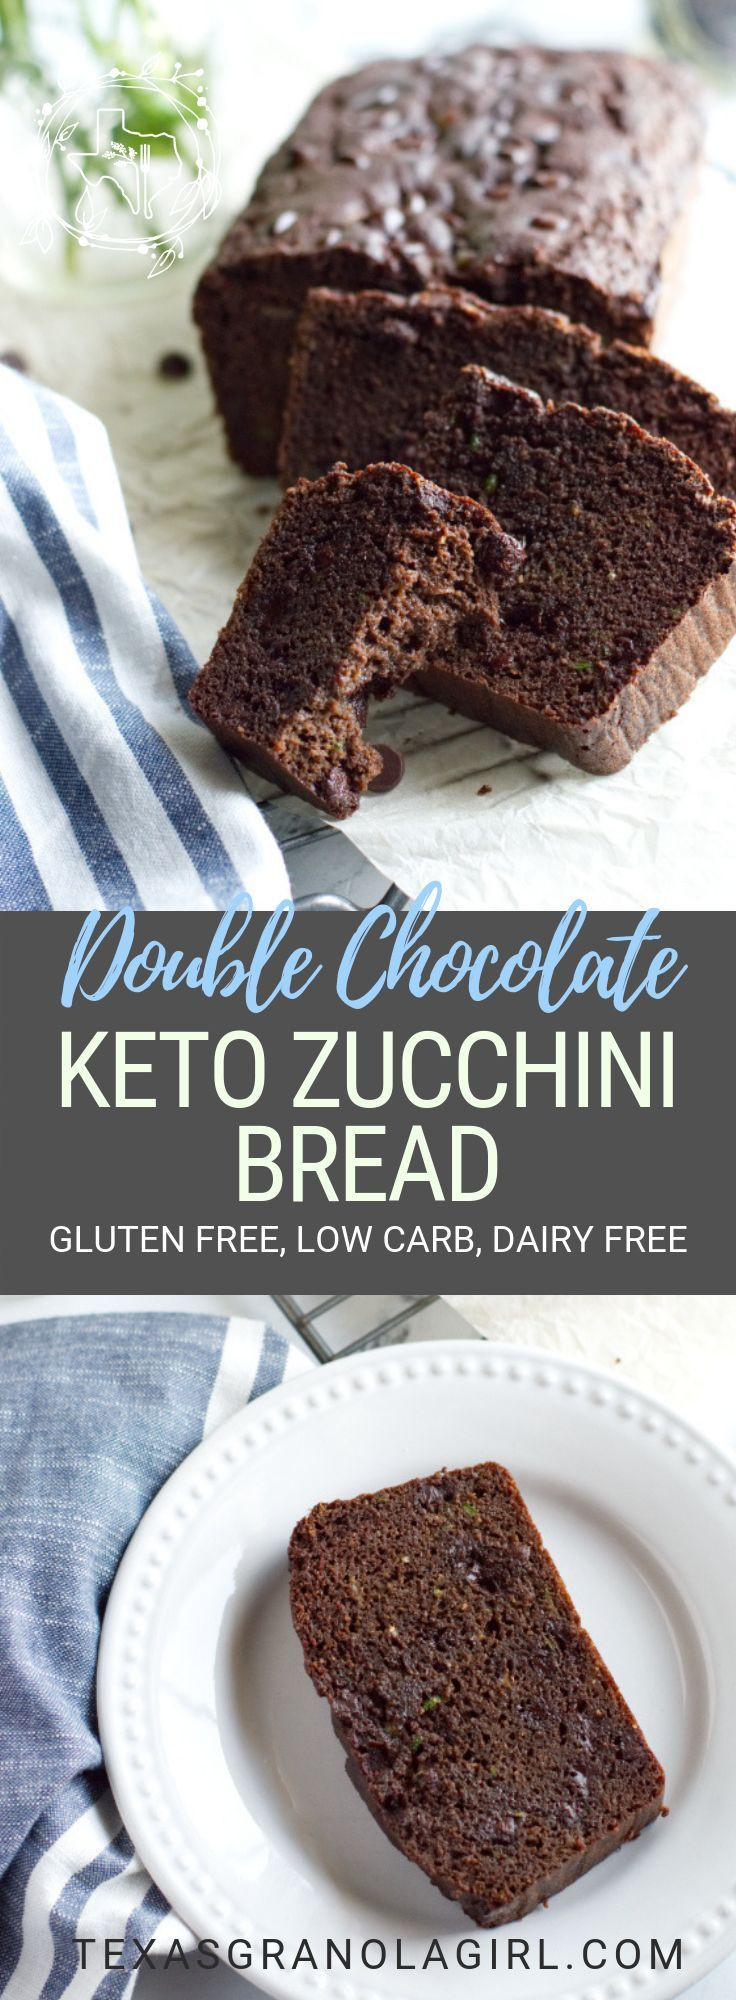 Keto Zucchini Bread Chocolate
 Keto Chocolate Zucchini Bread Recipe